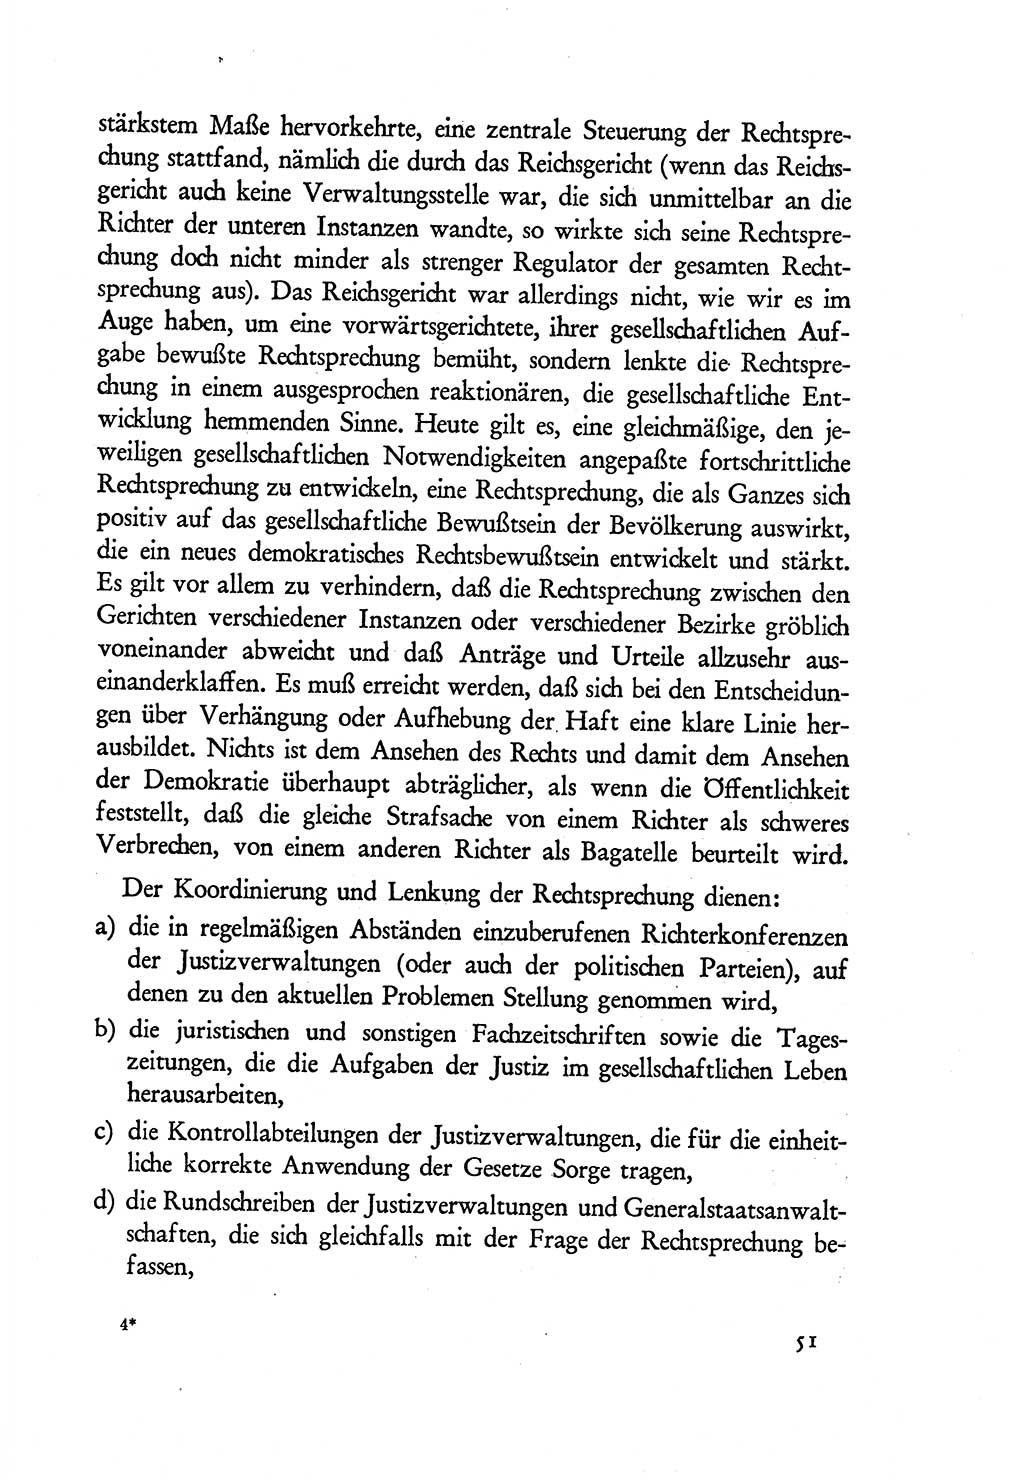 Probleme eines demokratischen Strafrechts [Sowjetische Besatzungszone (SBZ) Deutschlands] 1949, Seite 51 (Probl. Strafr. SBZ Dtl. 1949, S. 51)